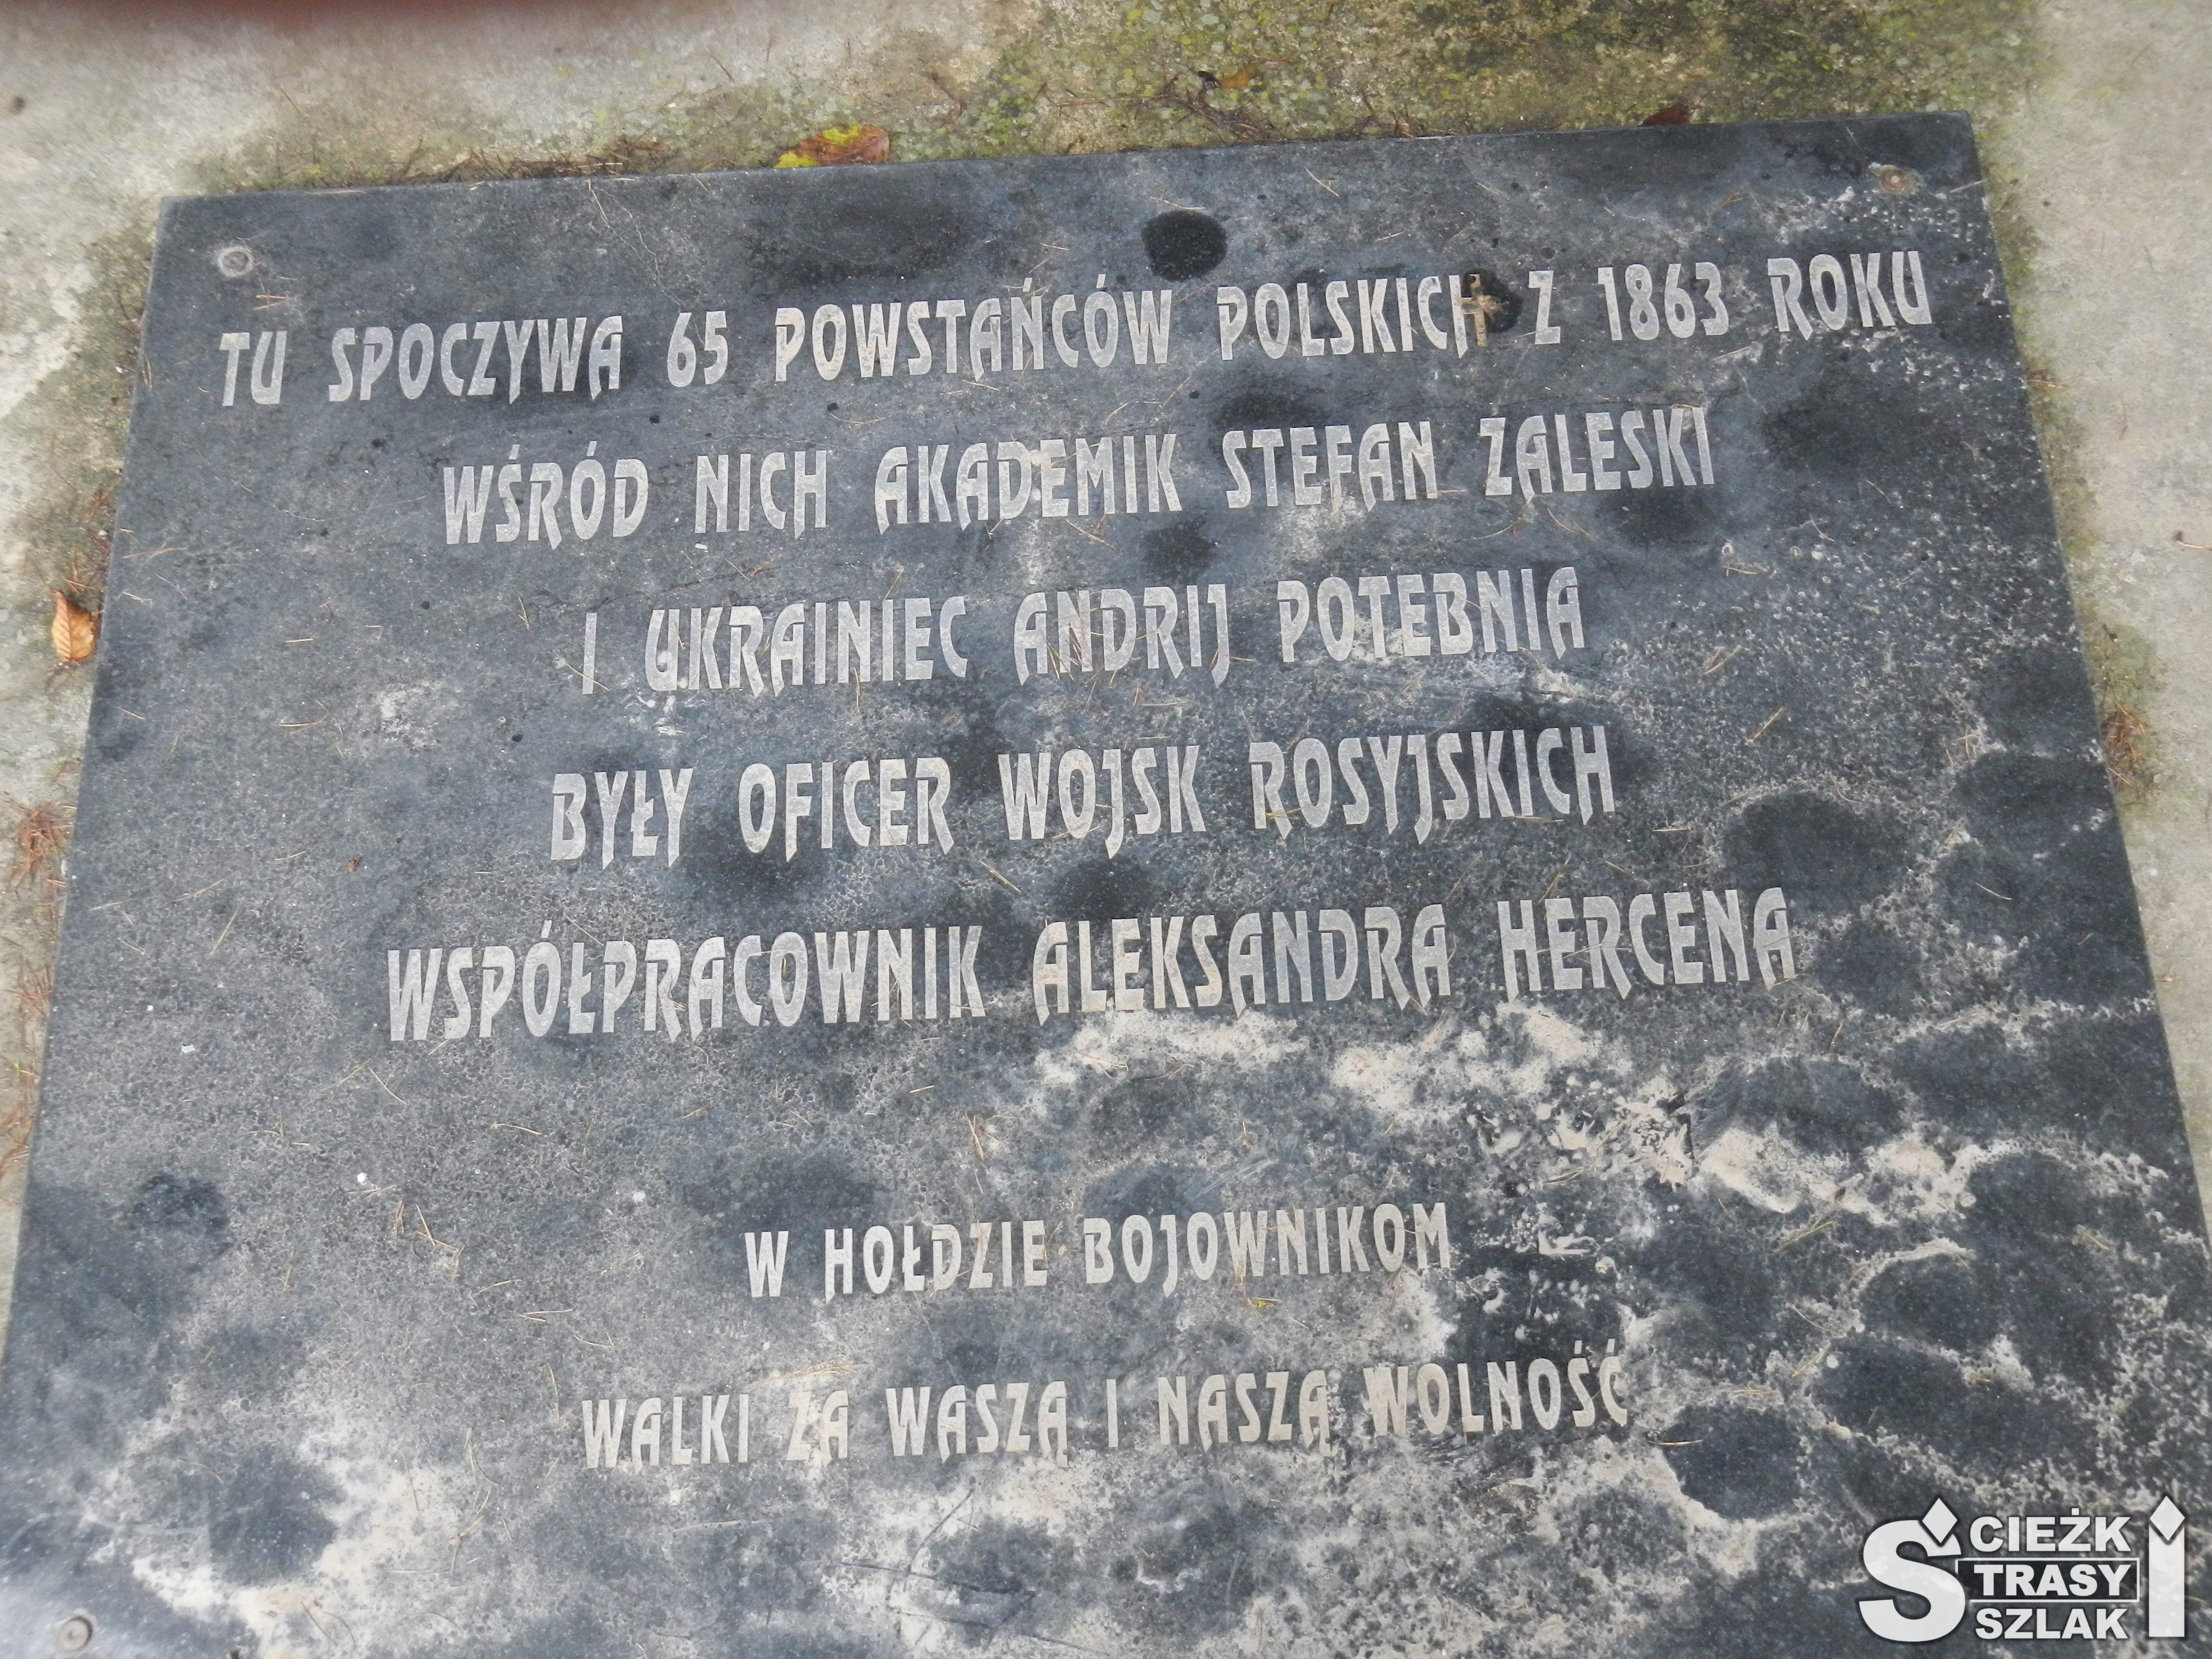 Płyta nagrobna z napisem "Tu spoczywa 65 powstańców polskich z 1863 roku"